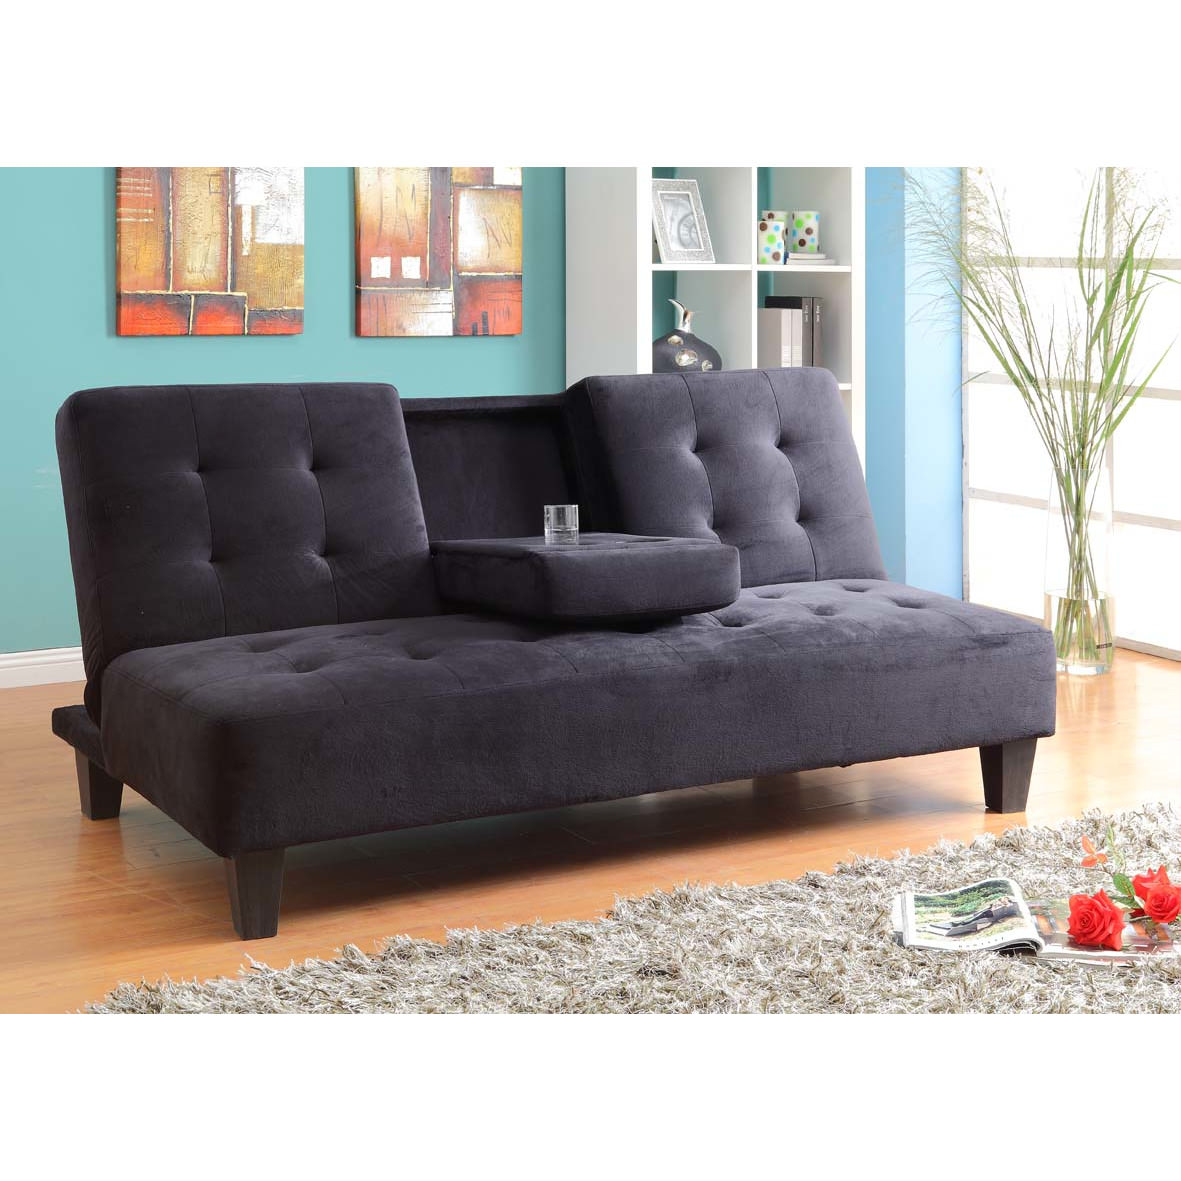 Image of: Couch Vs Sofa Vs Loveseat